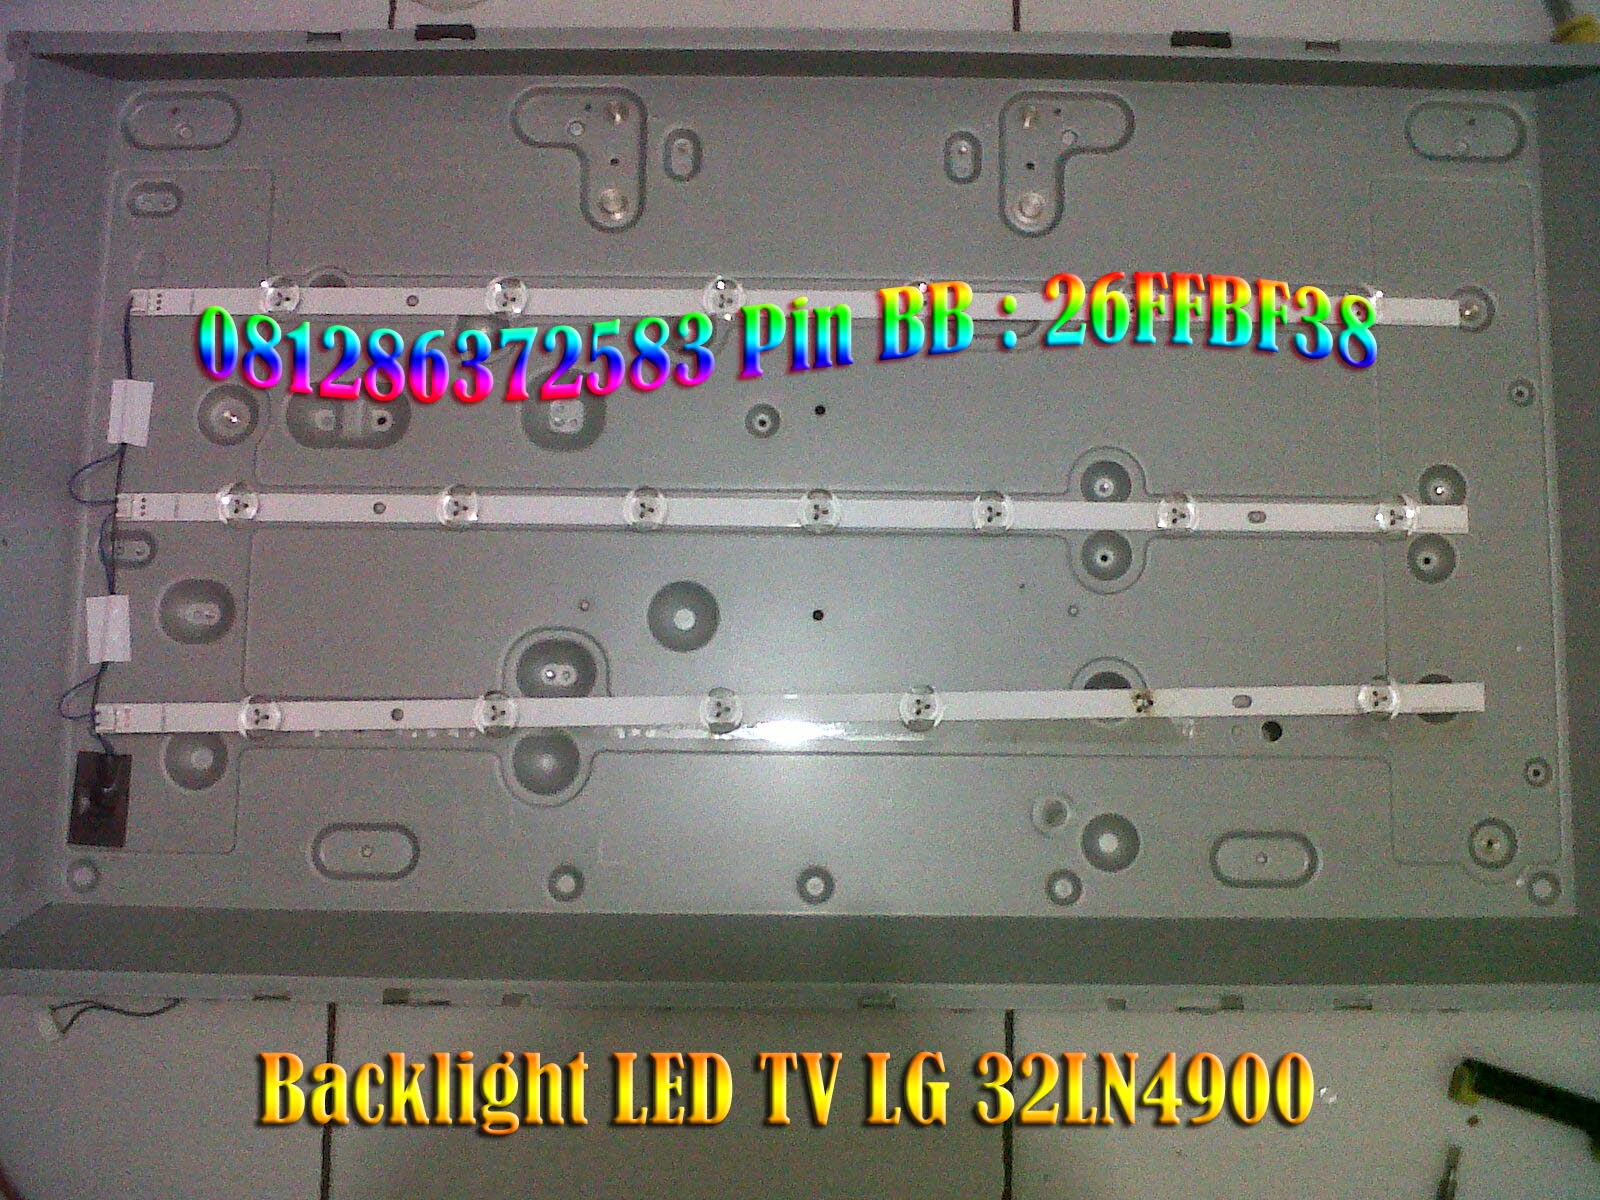 Service LG TV Tangerang  Service LED TV 32LN4900 